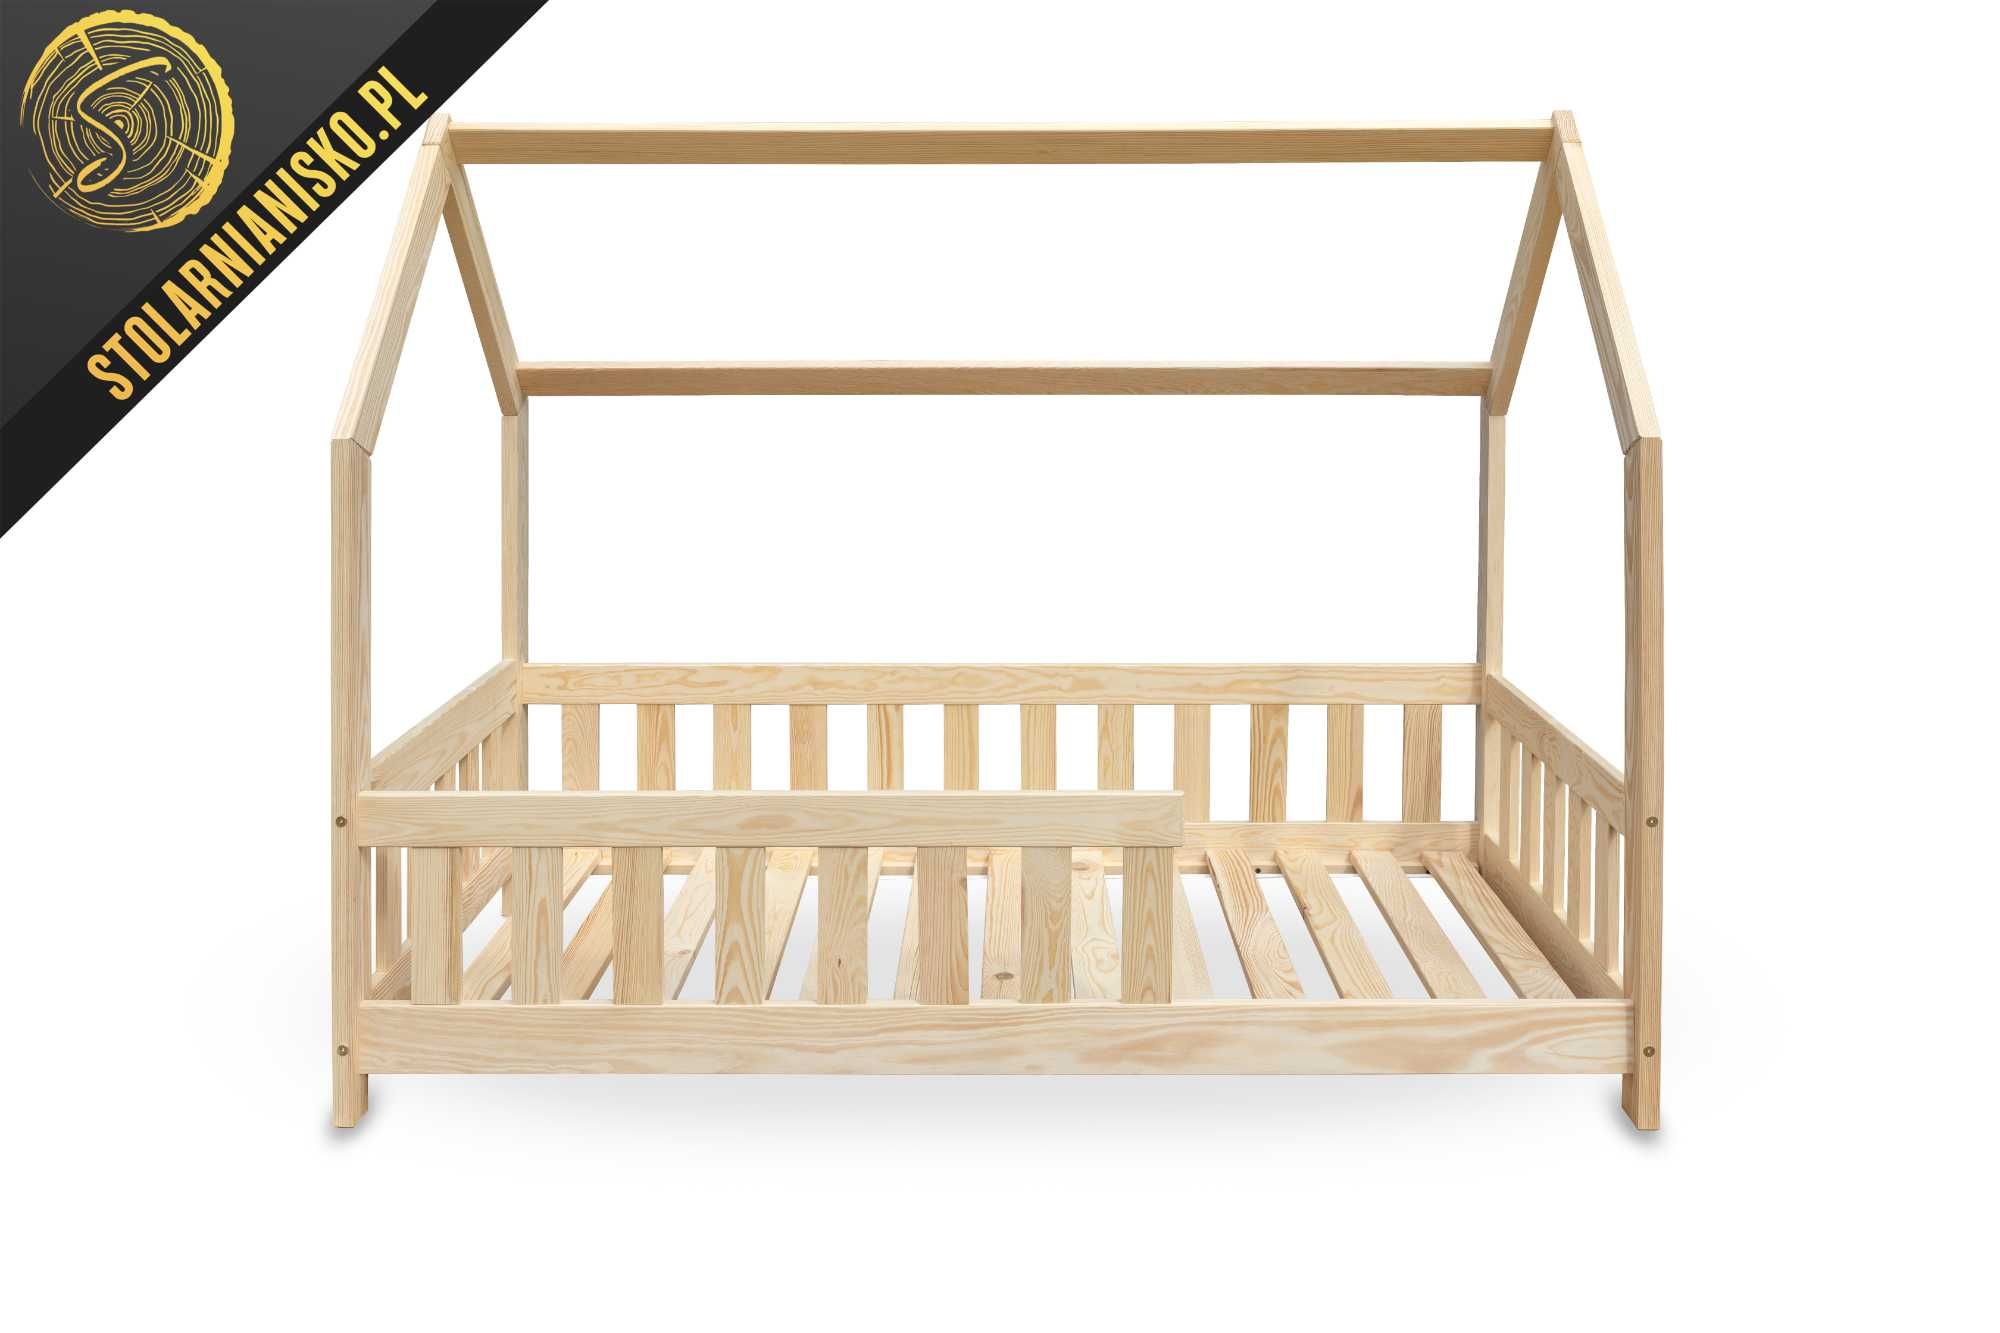 Łóżko drewniane domek dla dziecka 80x160 nielakierowane. Producent